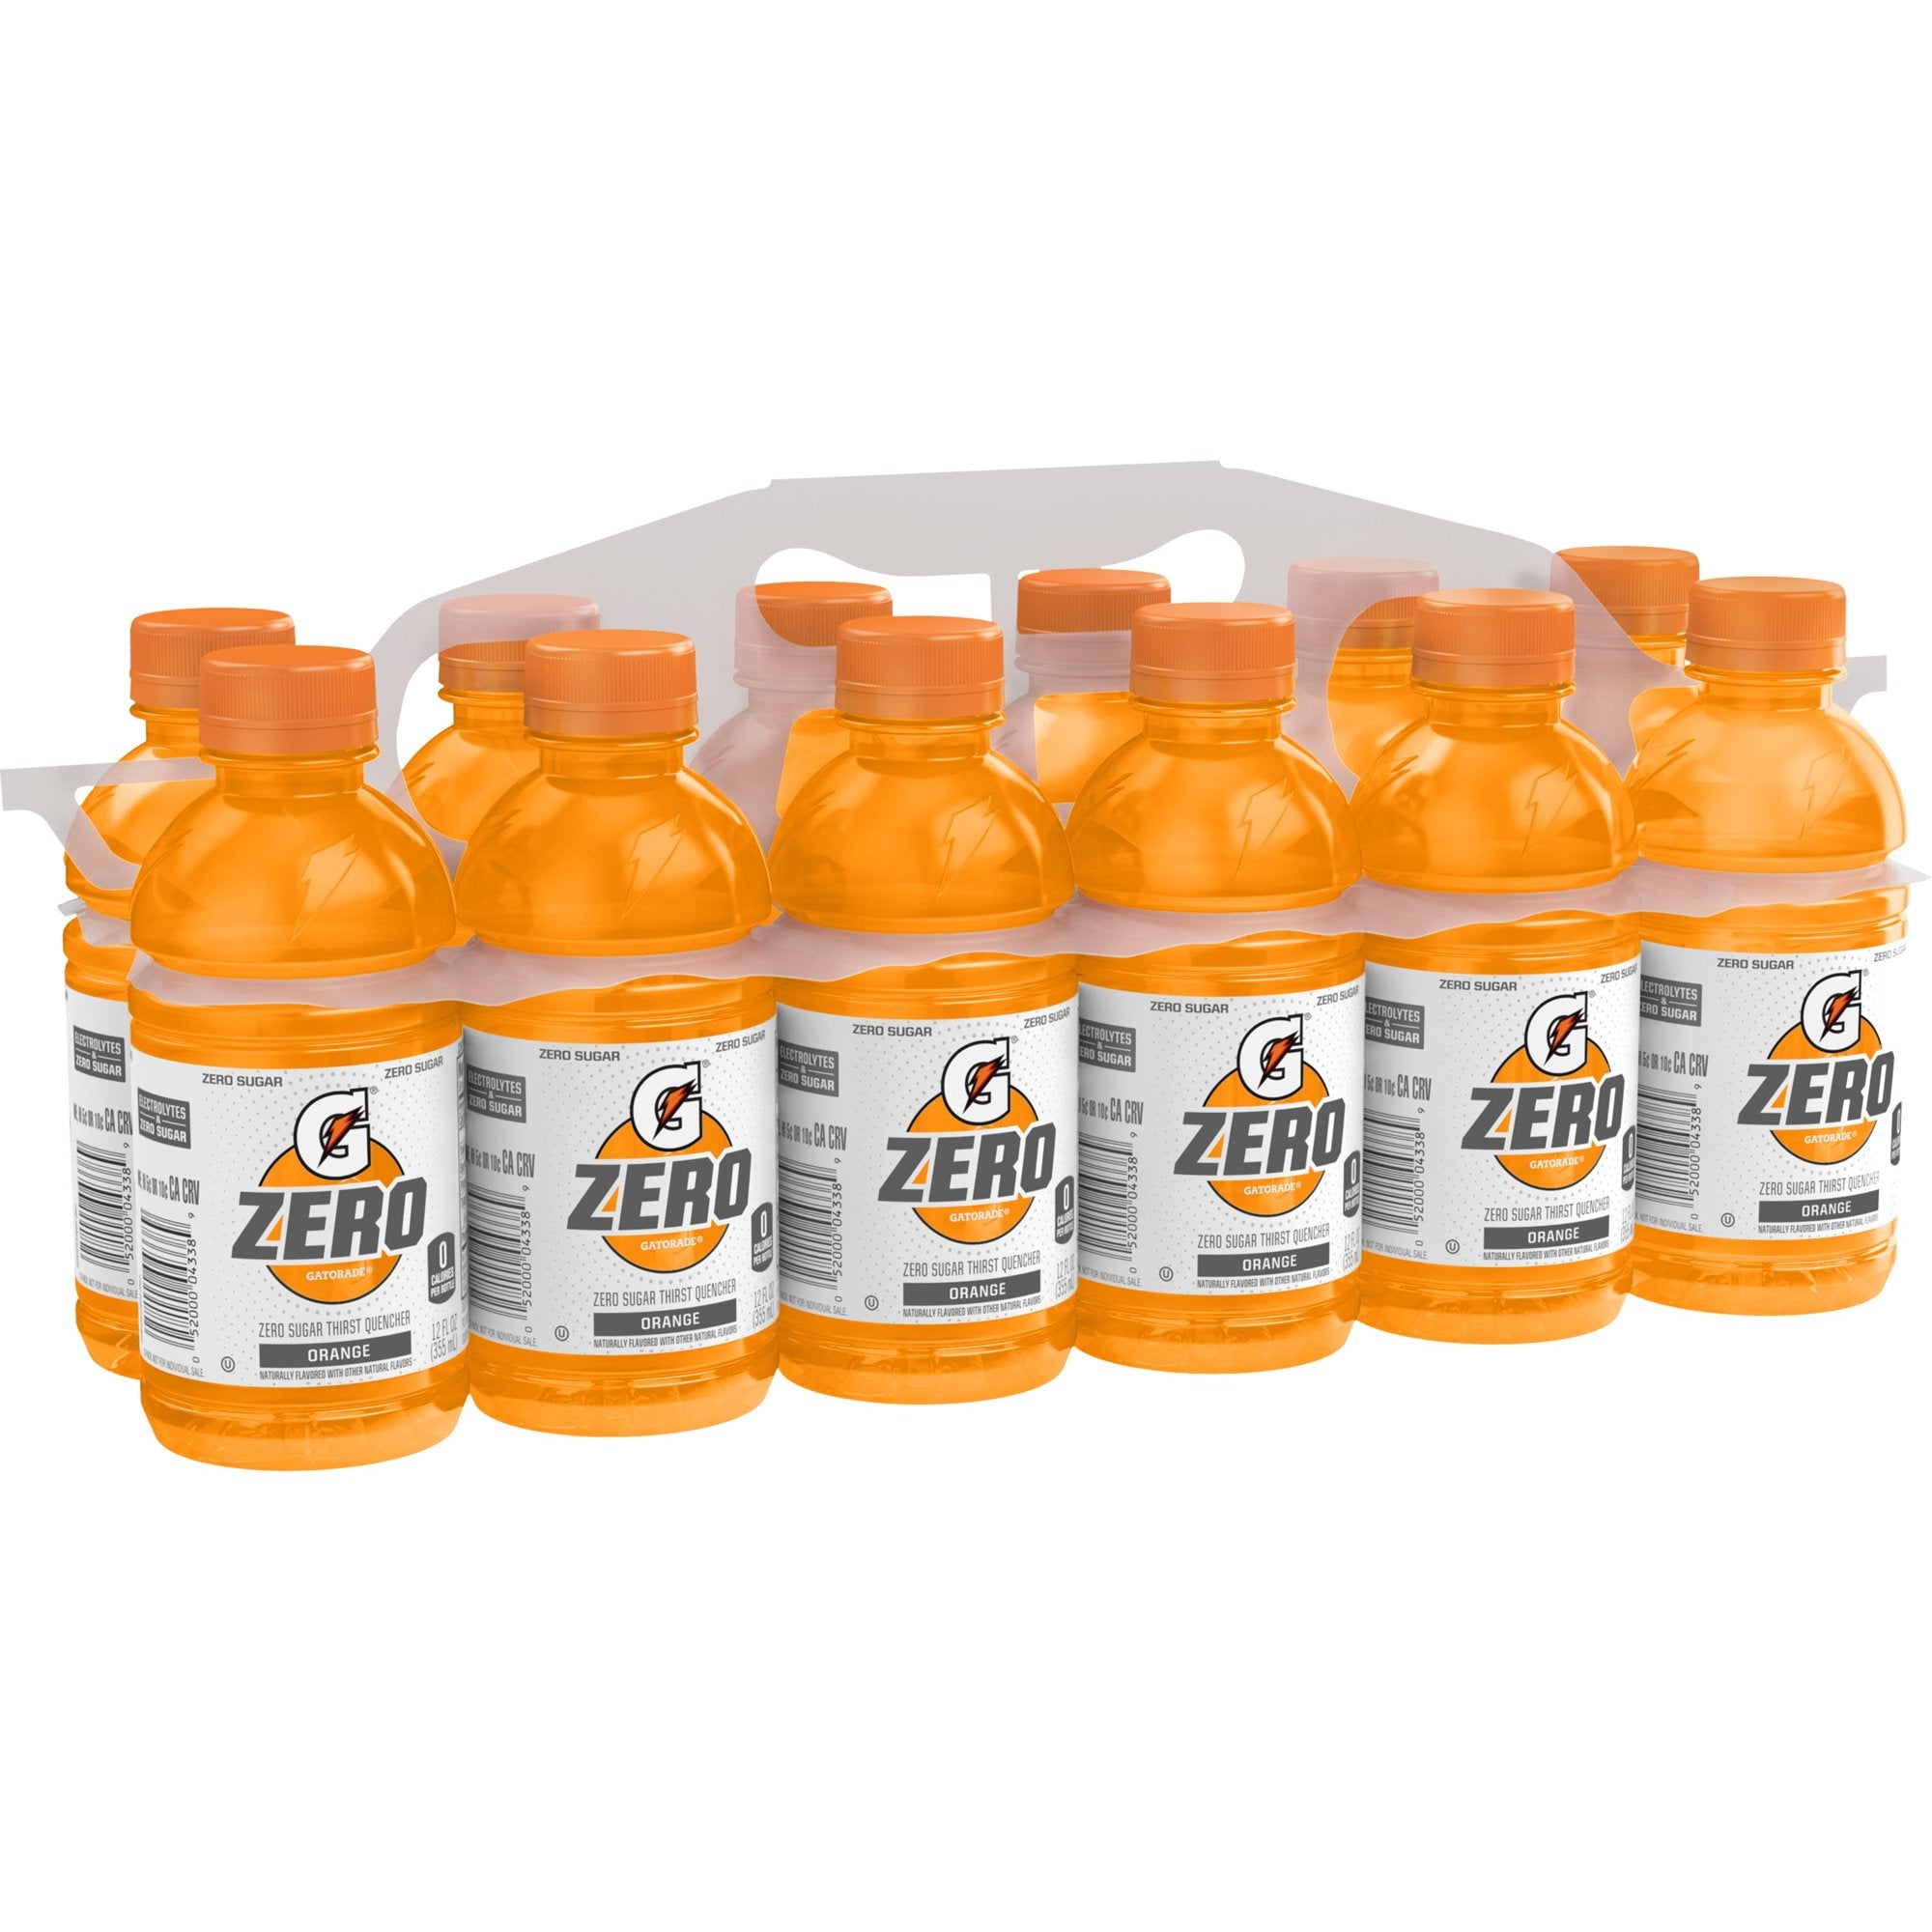 2 pack (12 Bottles) Gatorade G Zero Thirst Quencher, Orange, 12 fl oz